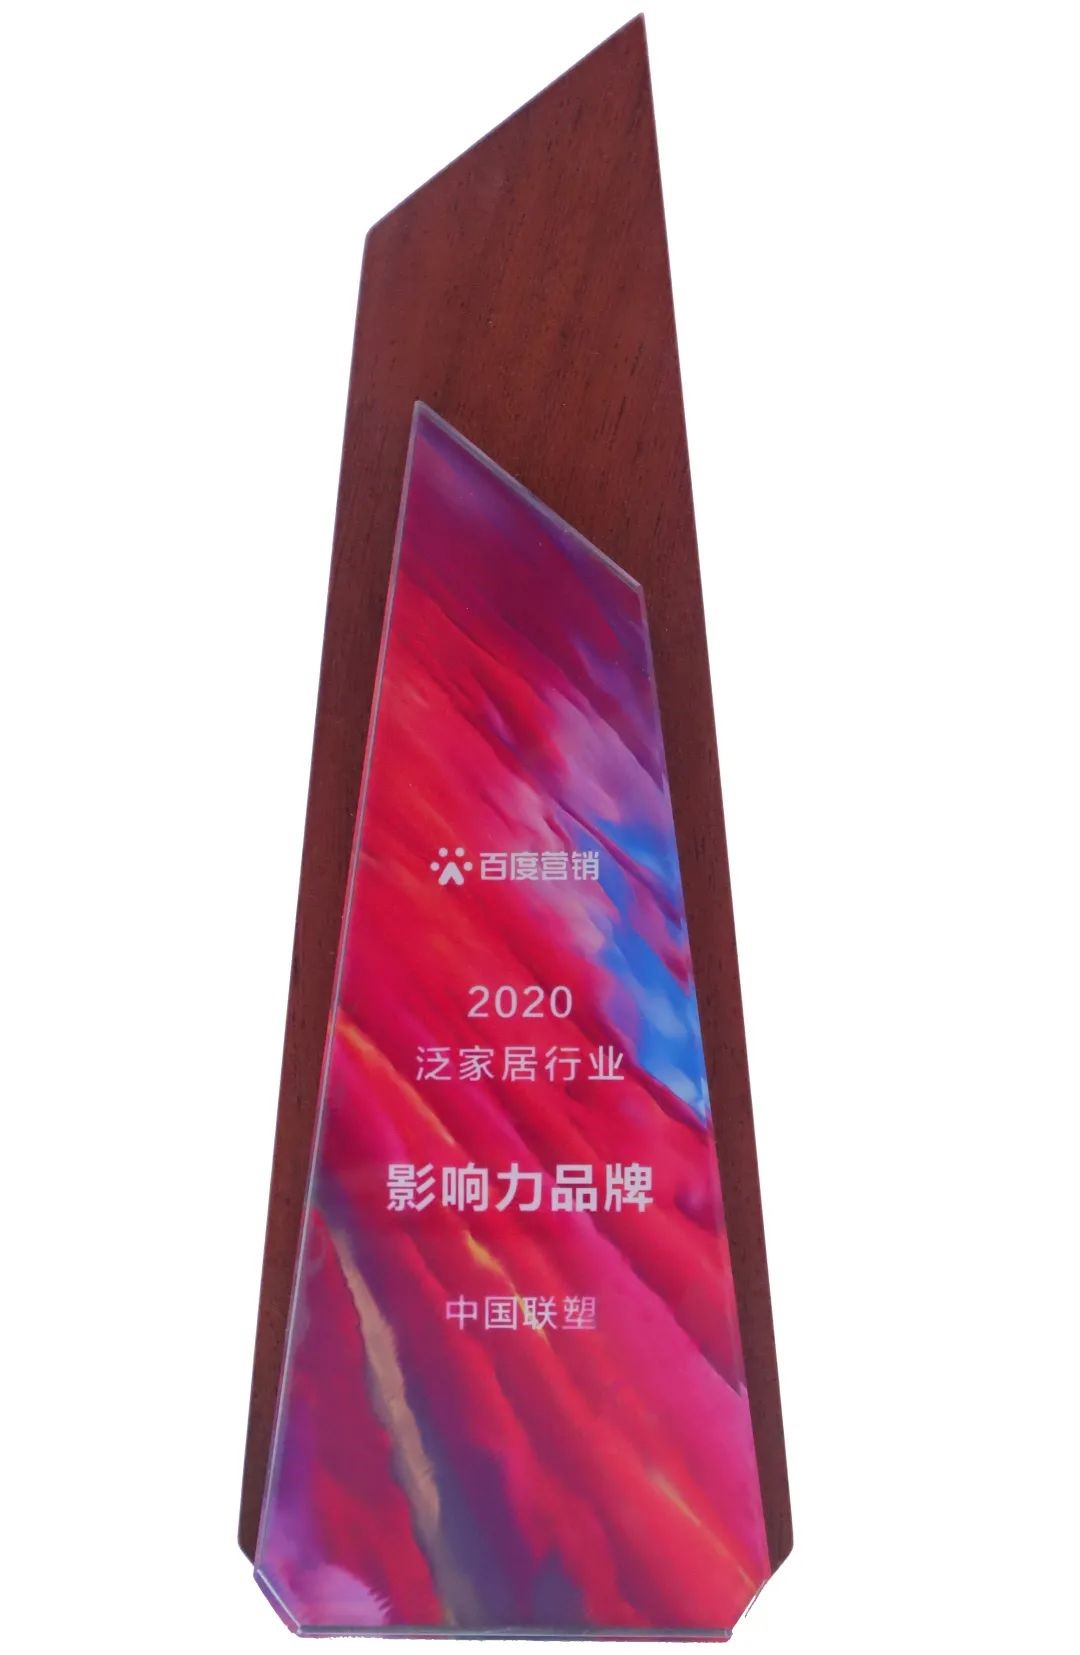 中国联塑荣获“2020泛家居行业影响力品牌”